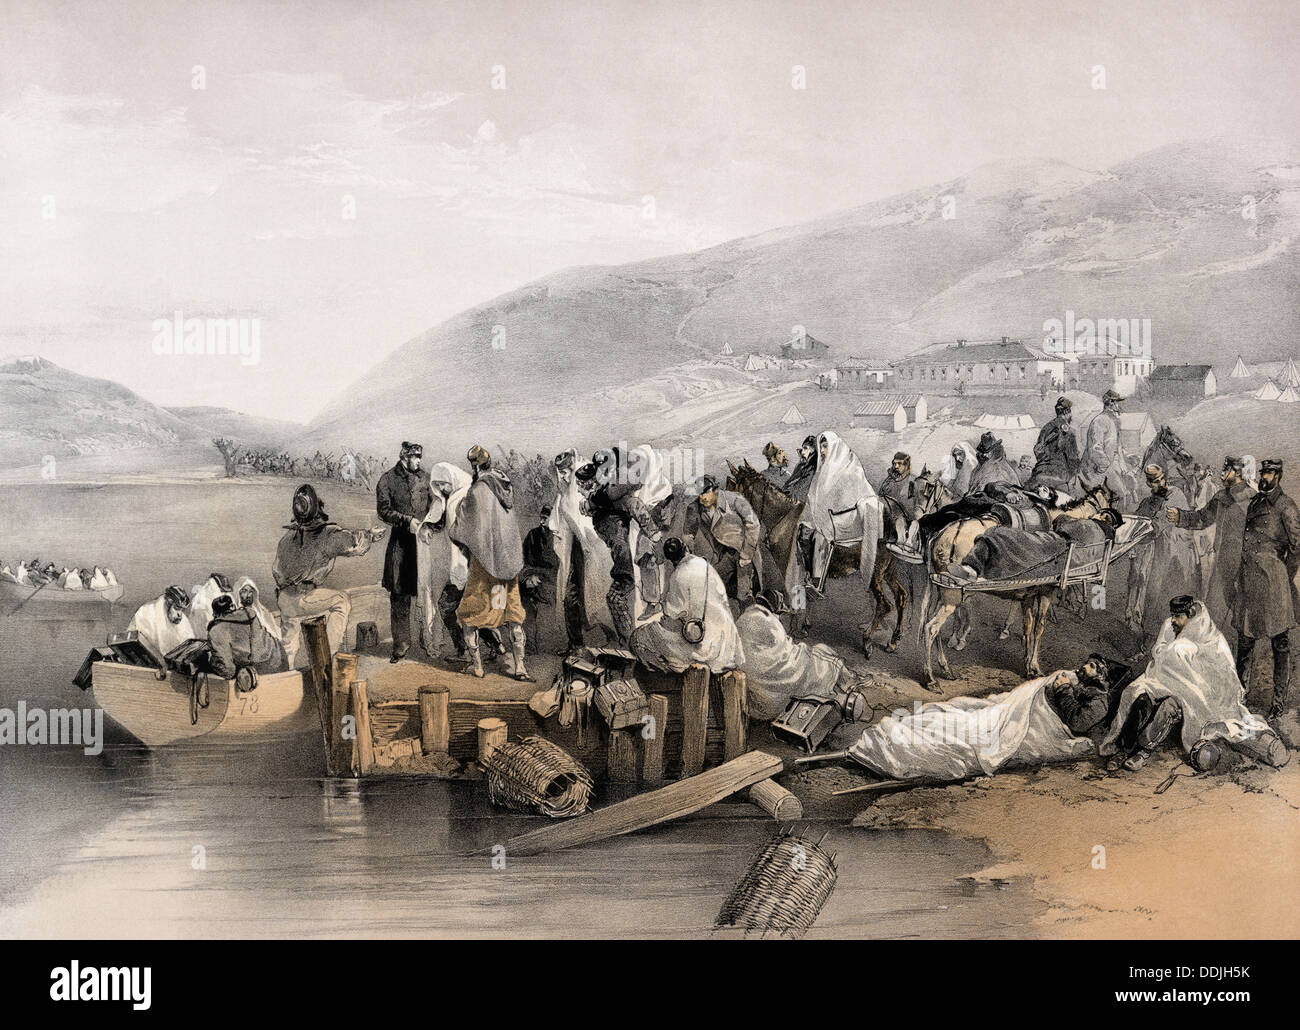 L'ÉVACUATION DES MALADES DE BALAKLAVA au cours de la guerre de Crimée peint par William Simpson en 1855 Banque D'Images